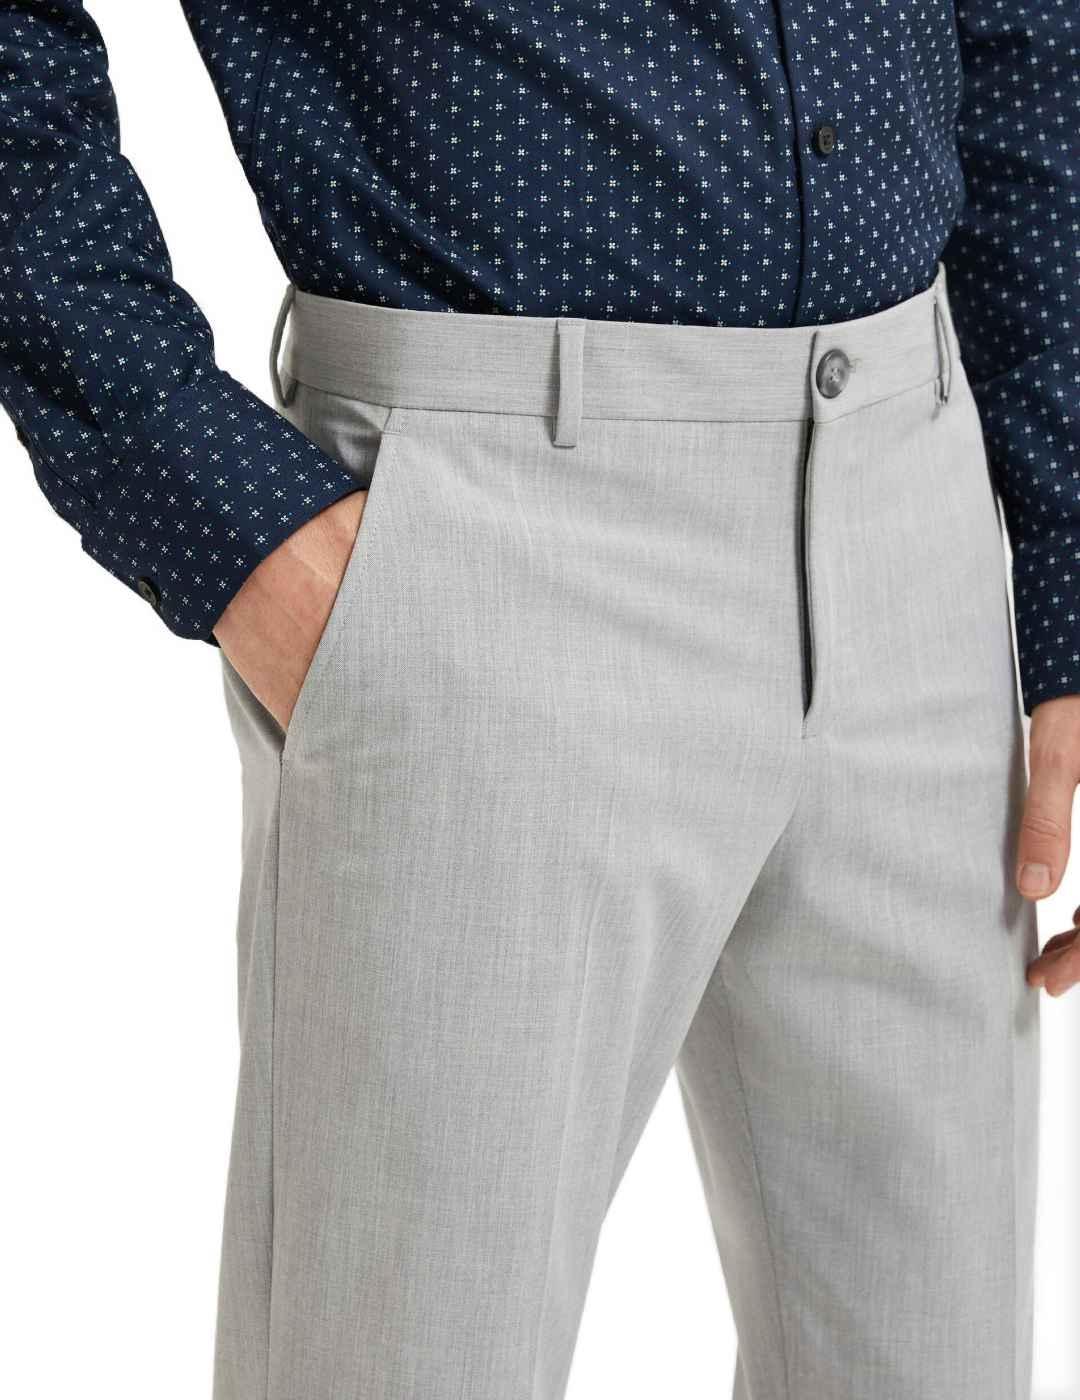 Pantalón traje slim gris tobillero hombre